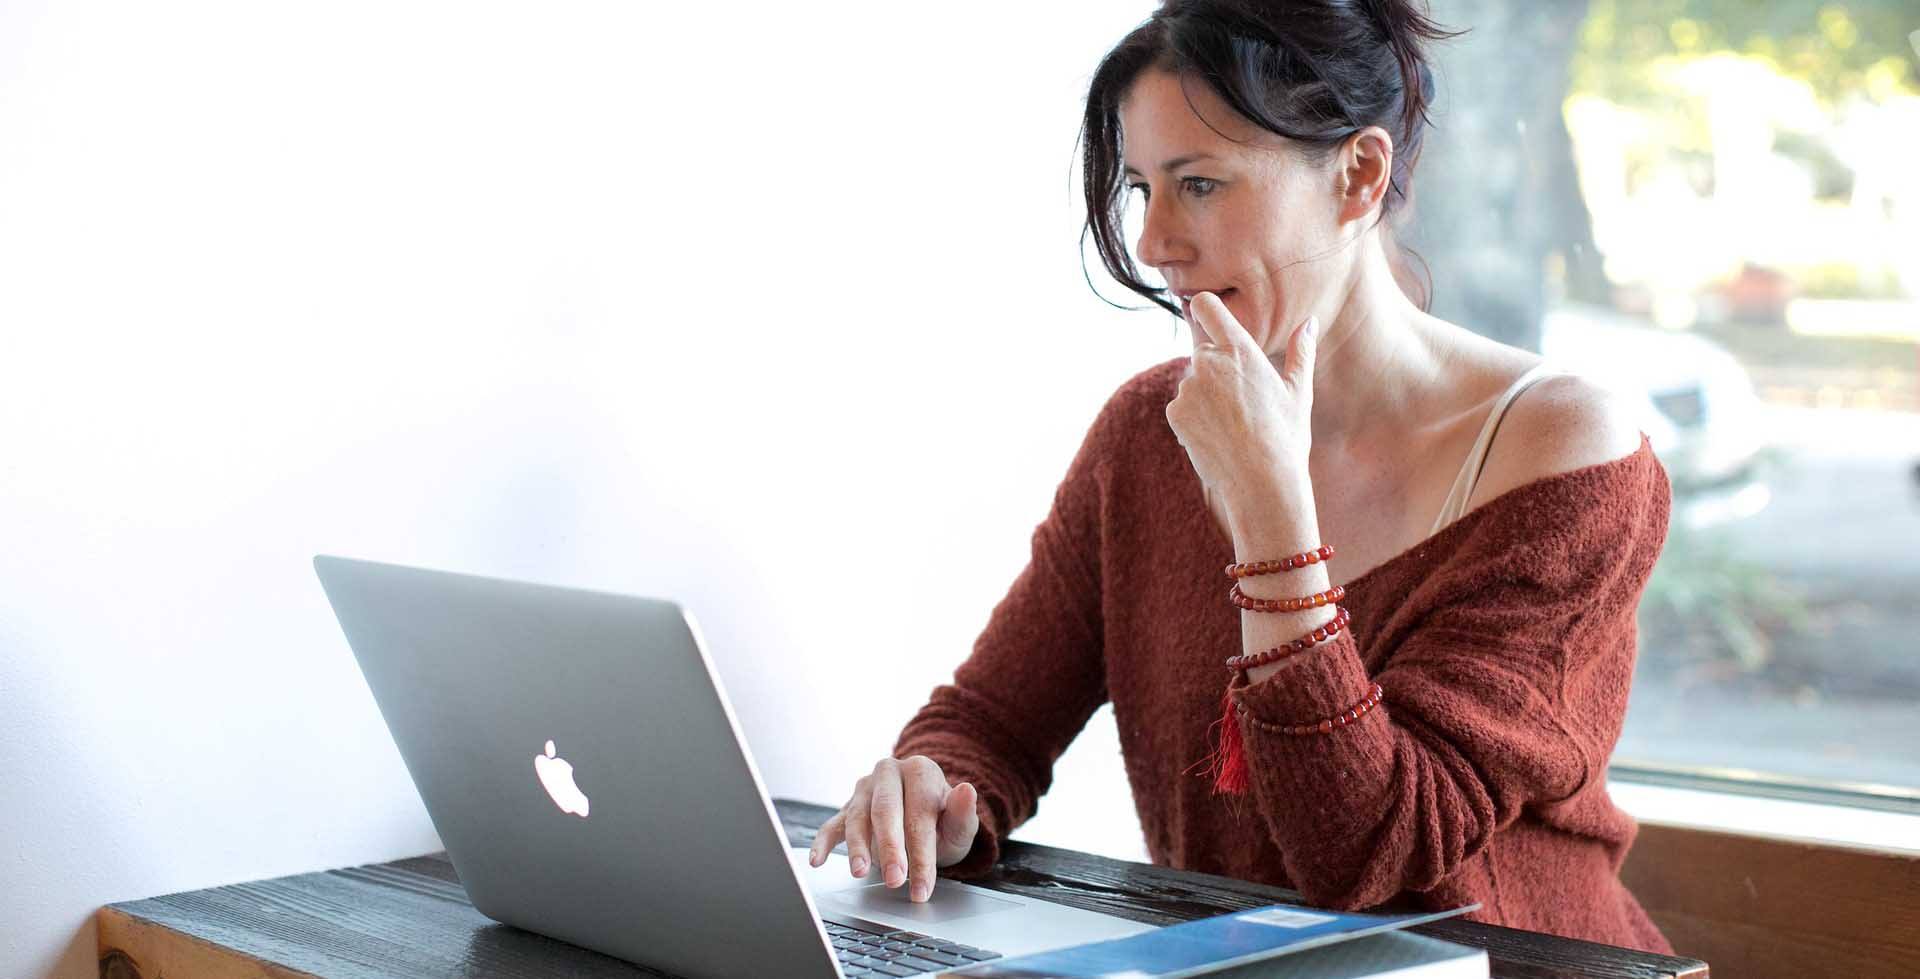 dobre SEO na blogu - kobieta siedząca przy komputerze marki apple 